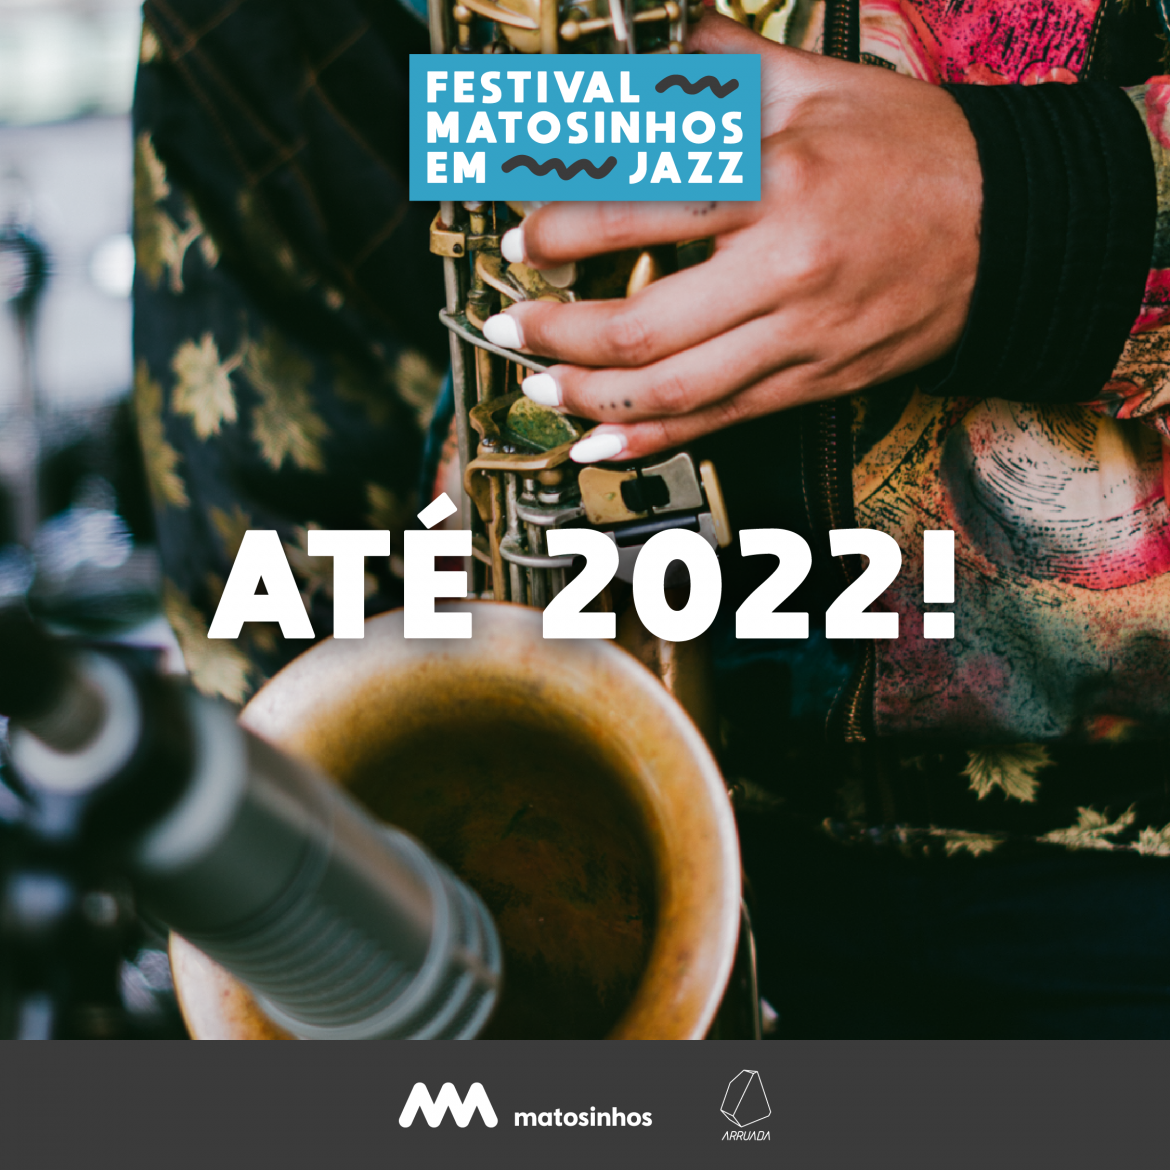 Festival Matosinhos em Jazz 2019 - CARTAZ